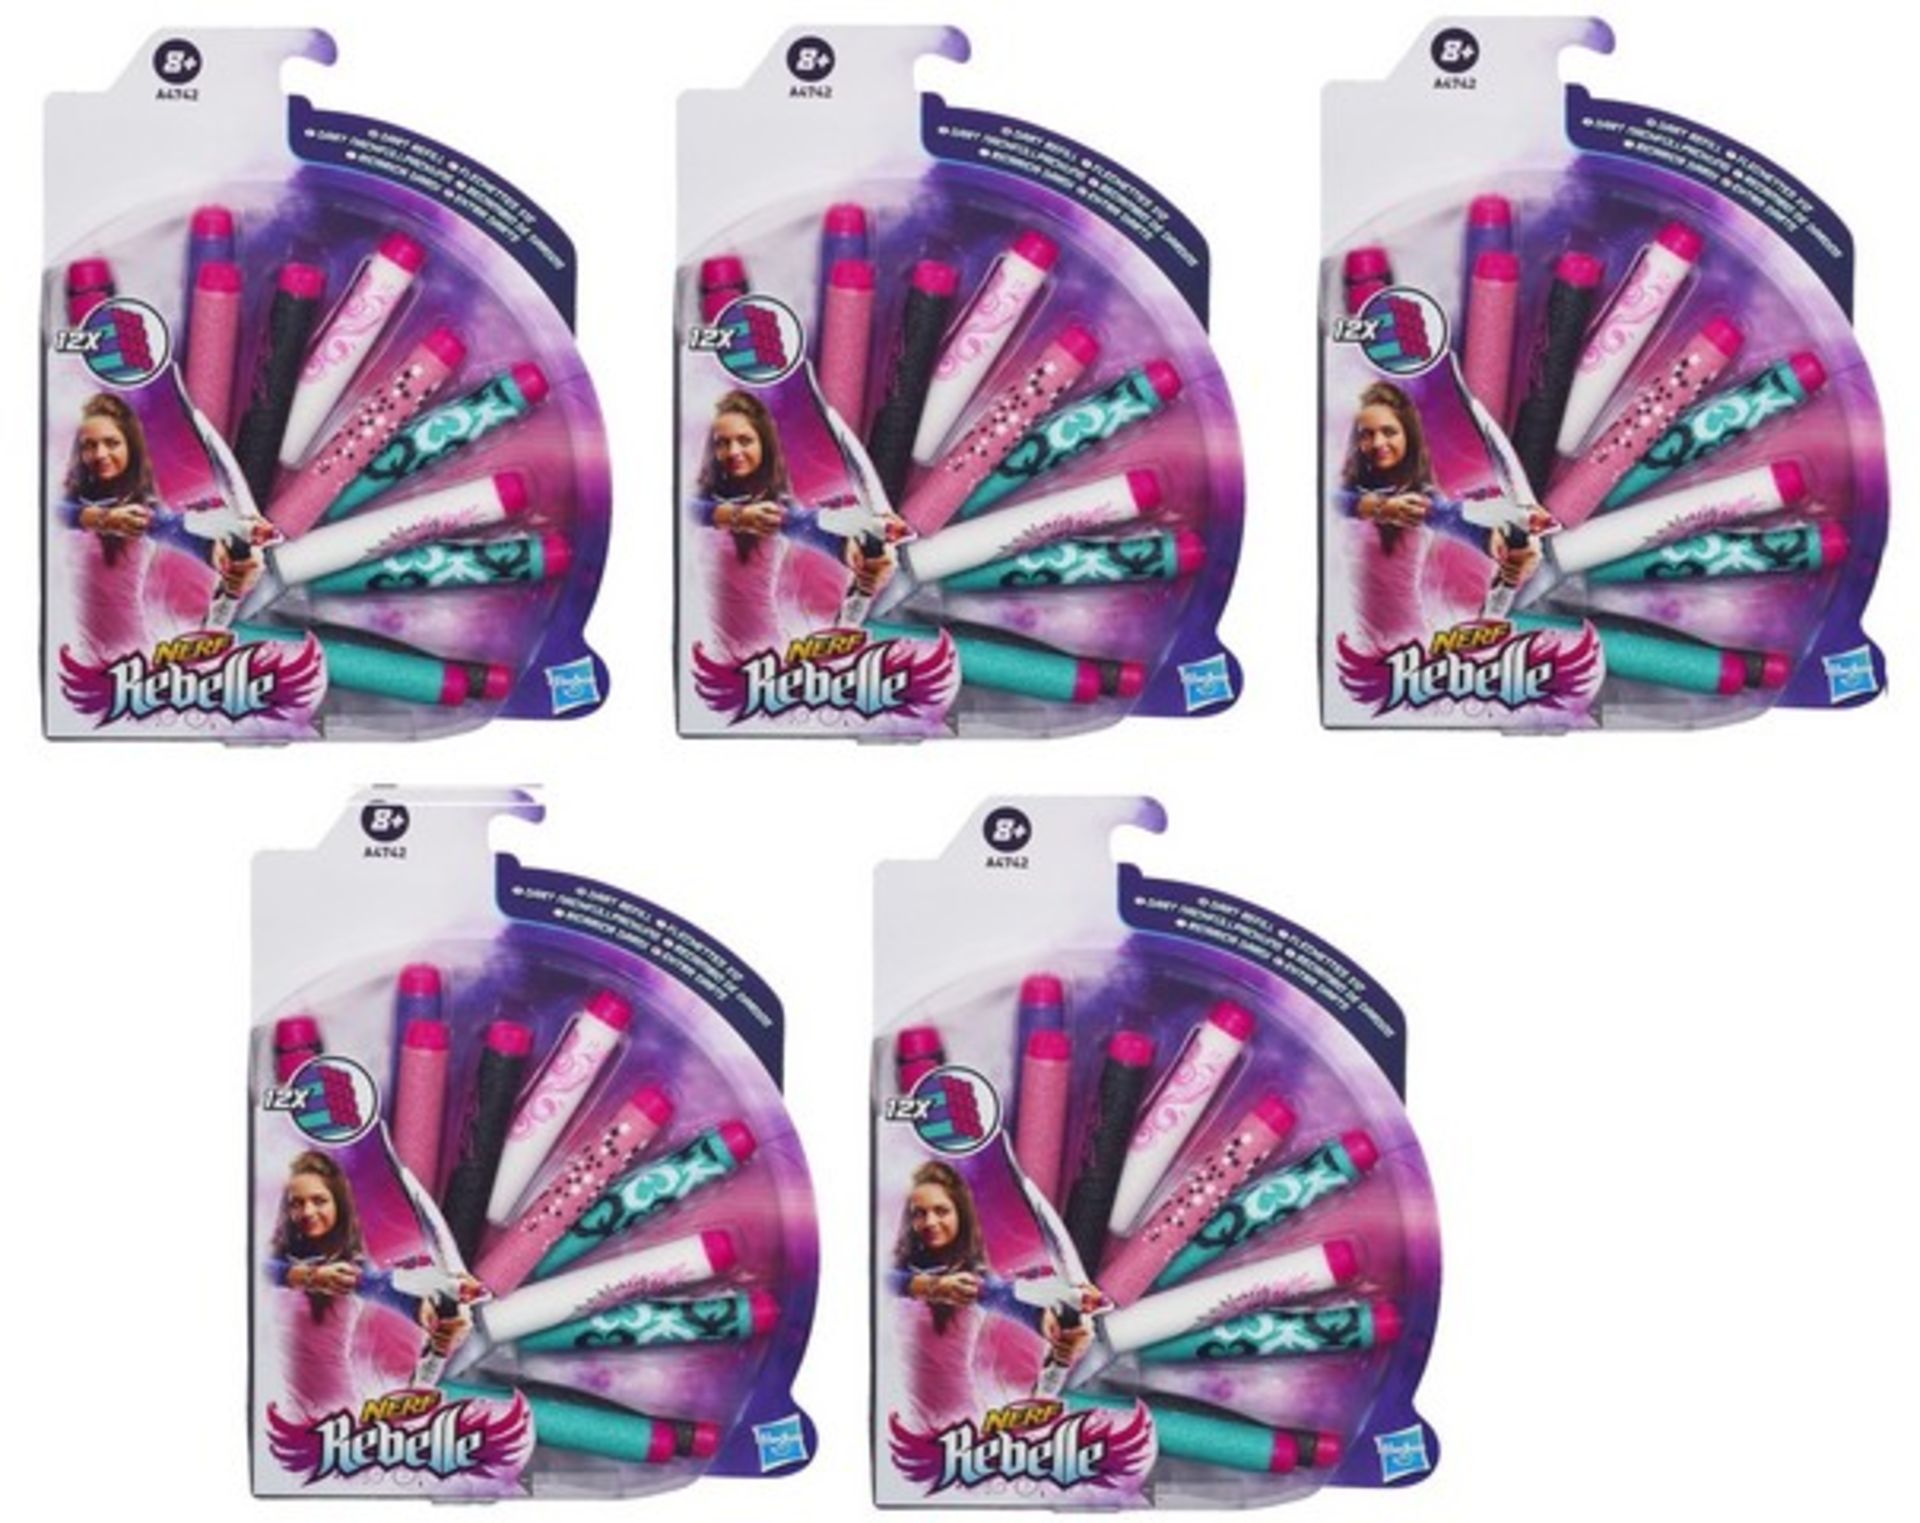 + VAT Brand New 5 Packs Hasbro Nerf Rebelle 12 x Dart Refill - Amazon Price £37.85 - Image 2 of 2